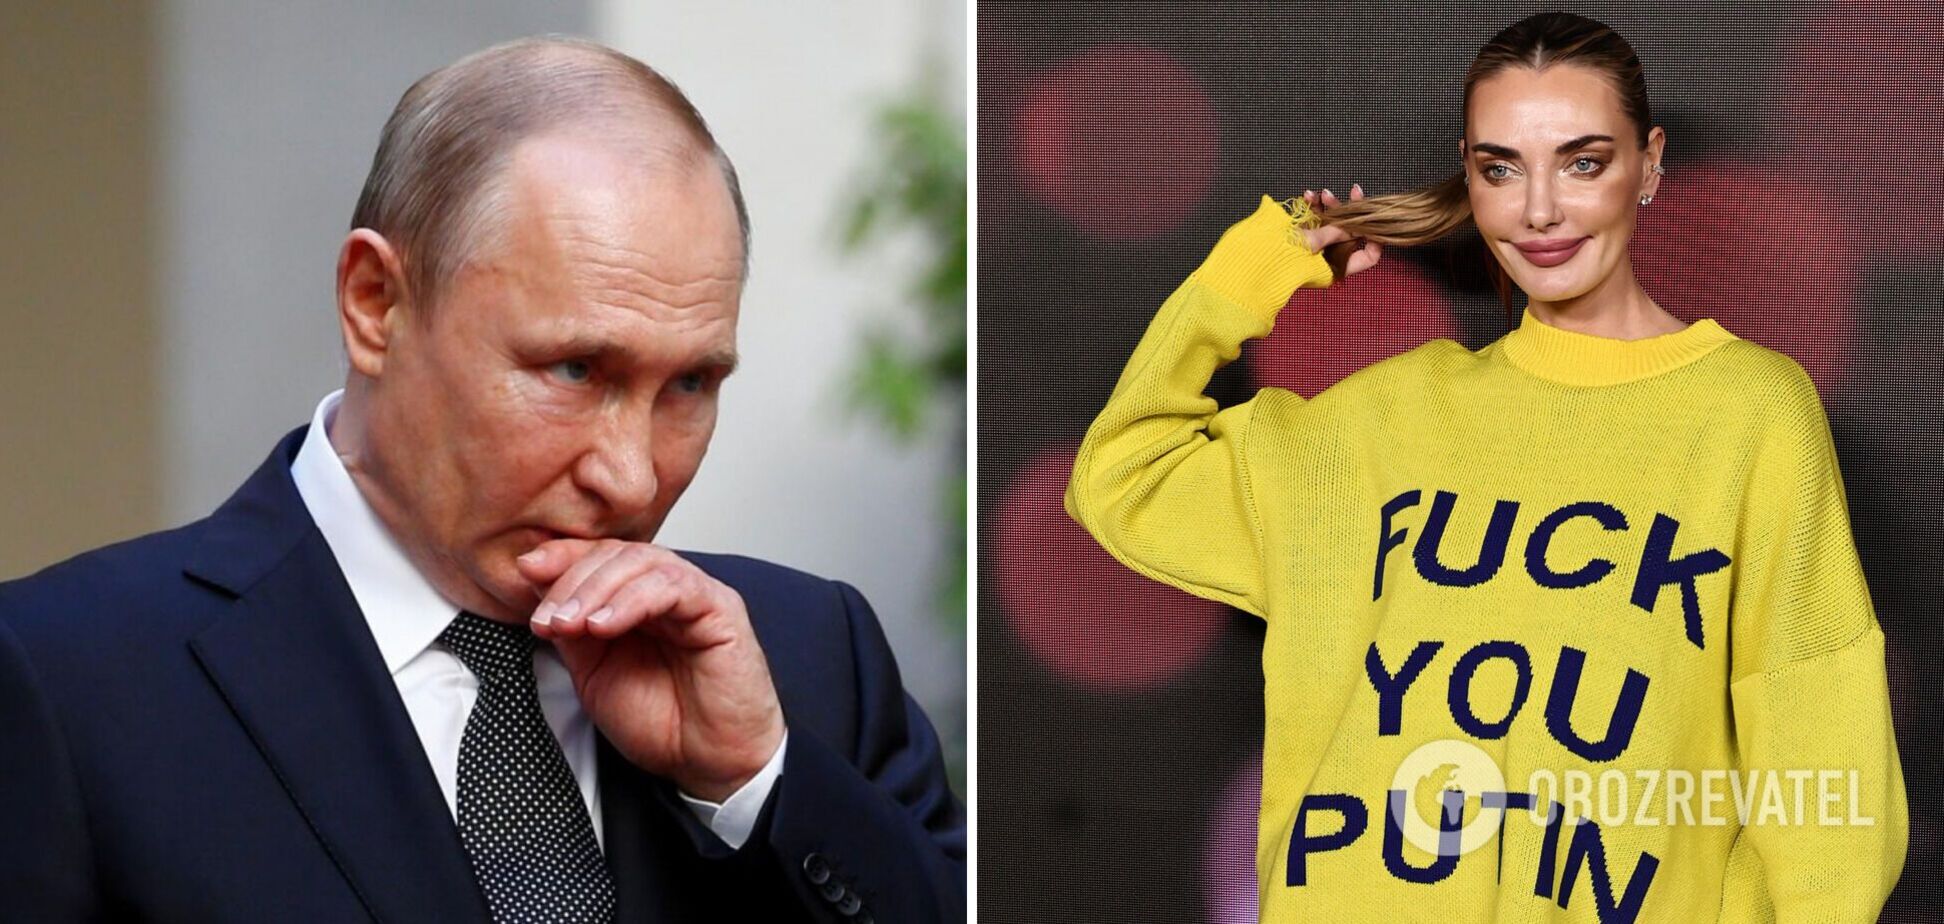 Супермодель Алина Байкова нецензурно обратилась к Путину с красной дорожки благодаря красноречивому мини-платью. Фото